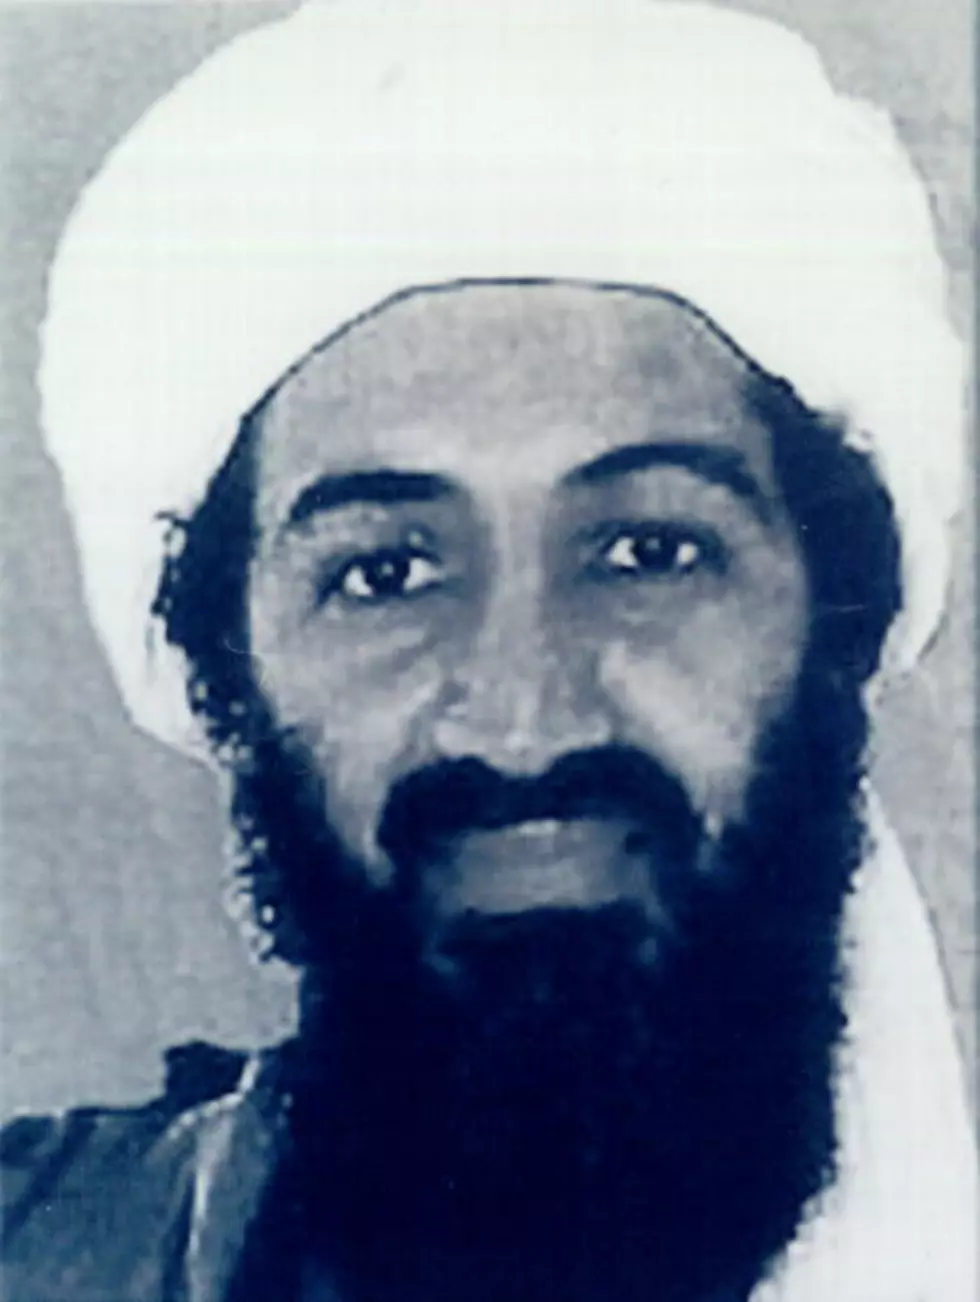 Should We Celebrate Bin Laden’s Death?